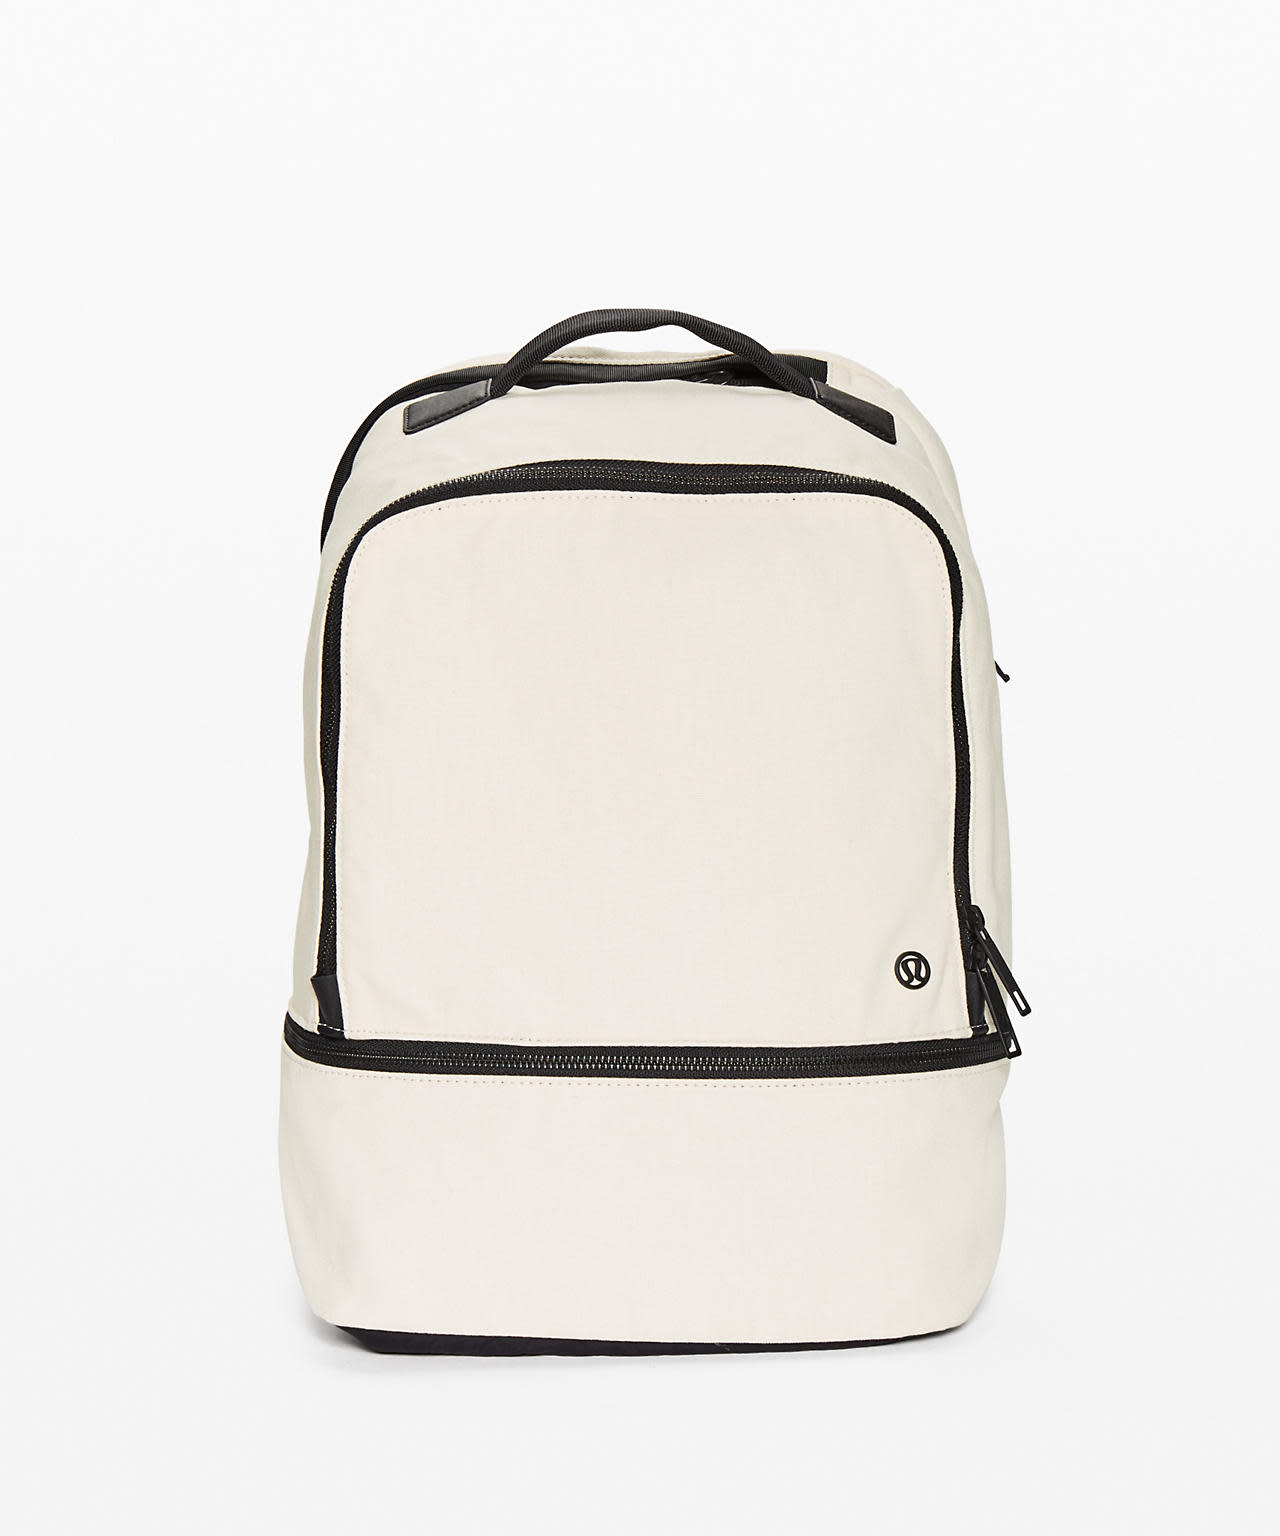 best backpack for back